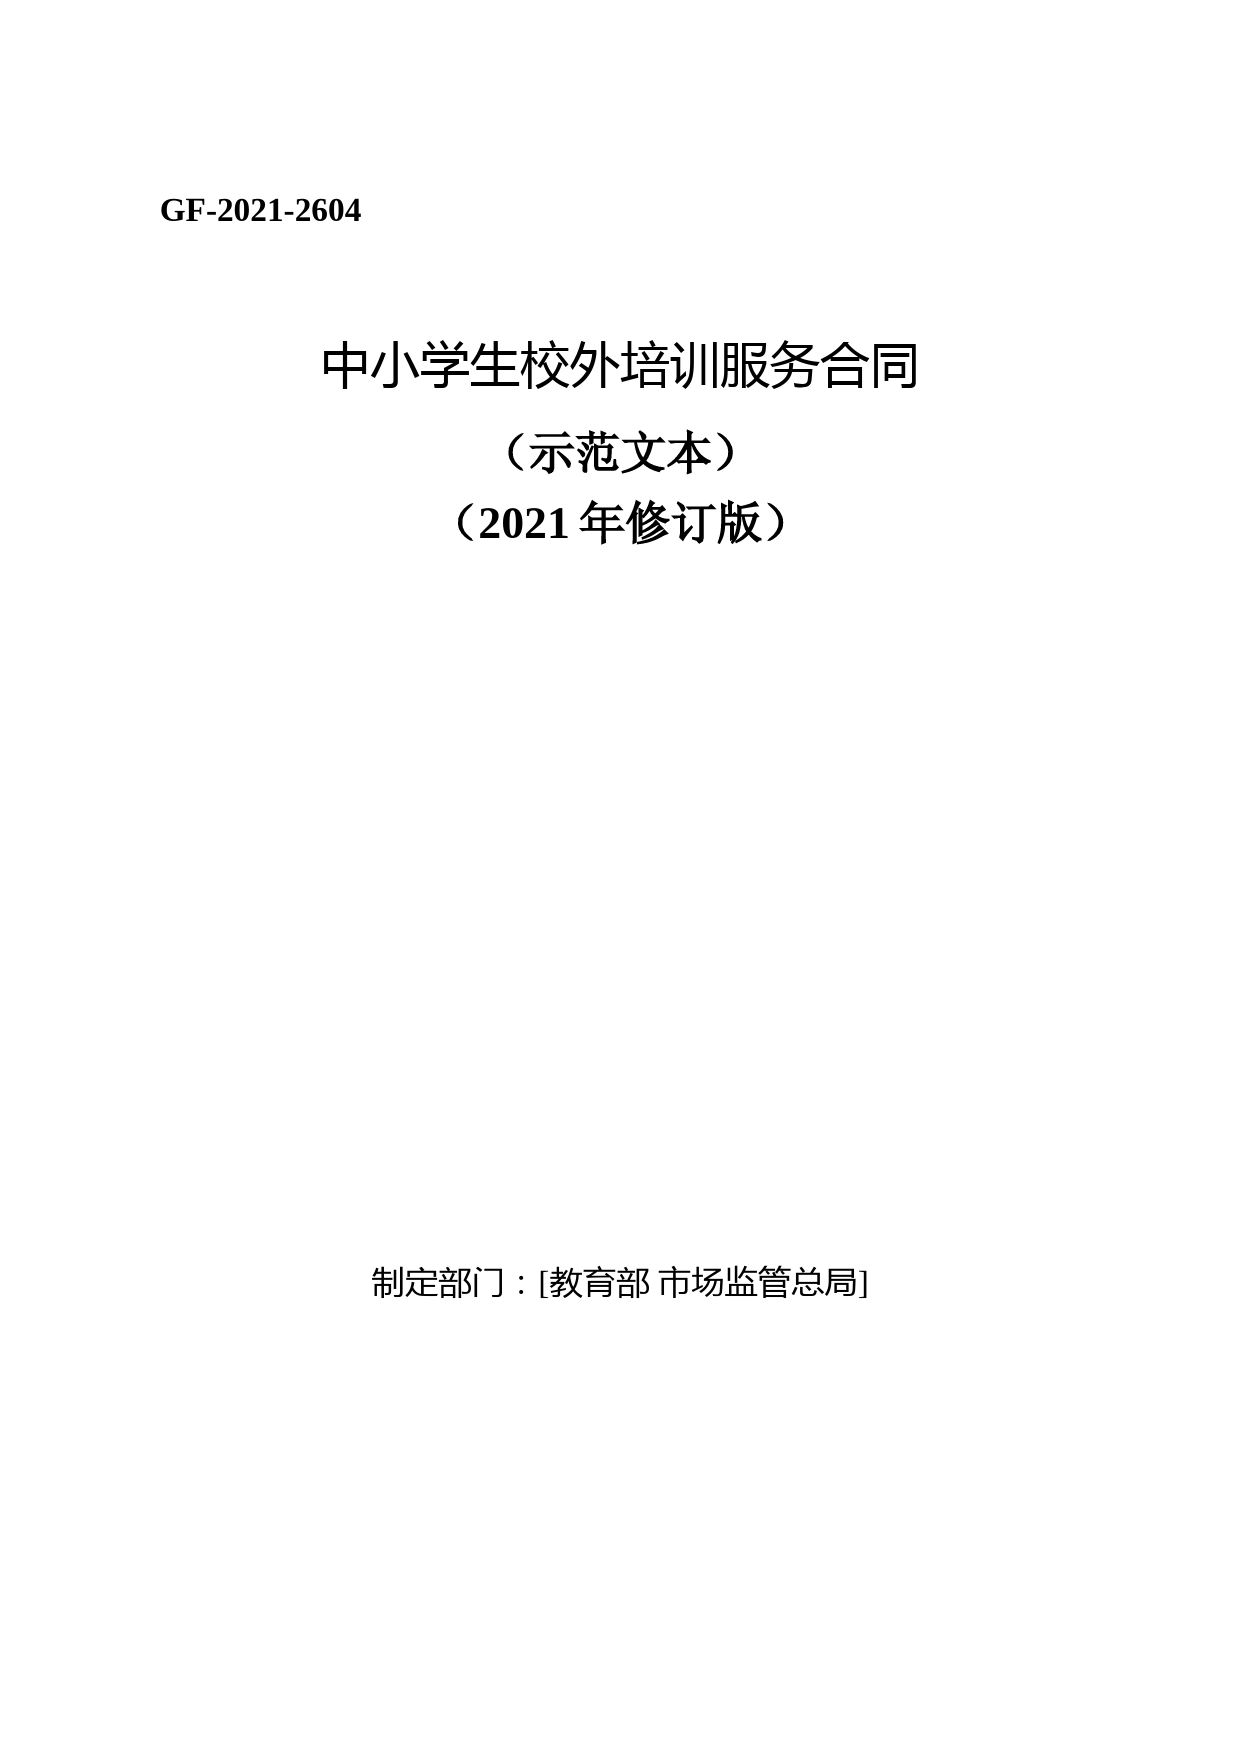 中小学生校外培训服务合同(示范文本)(2021年修订版)